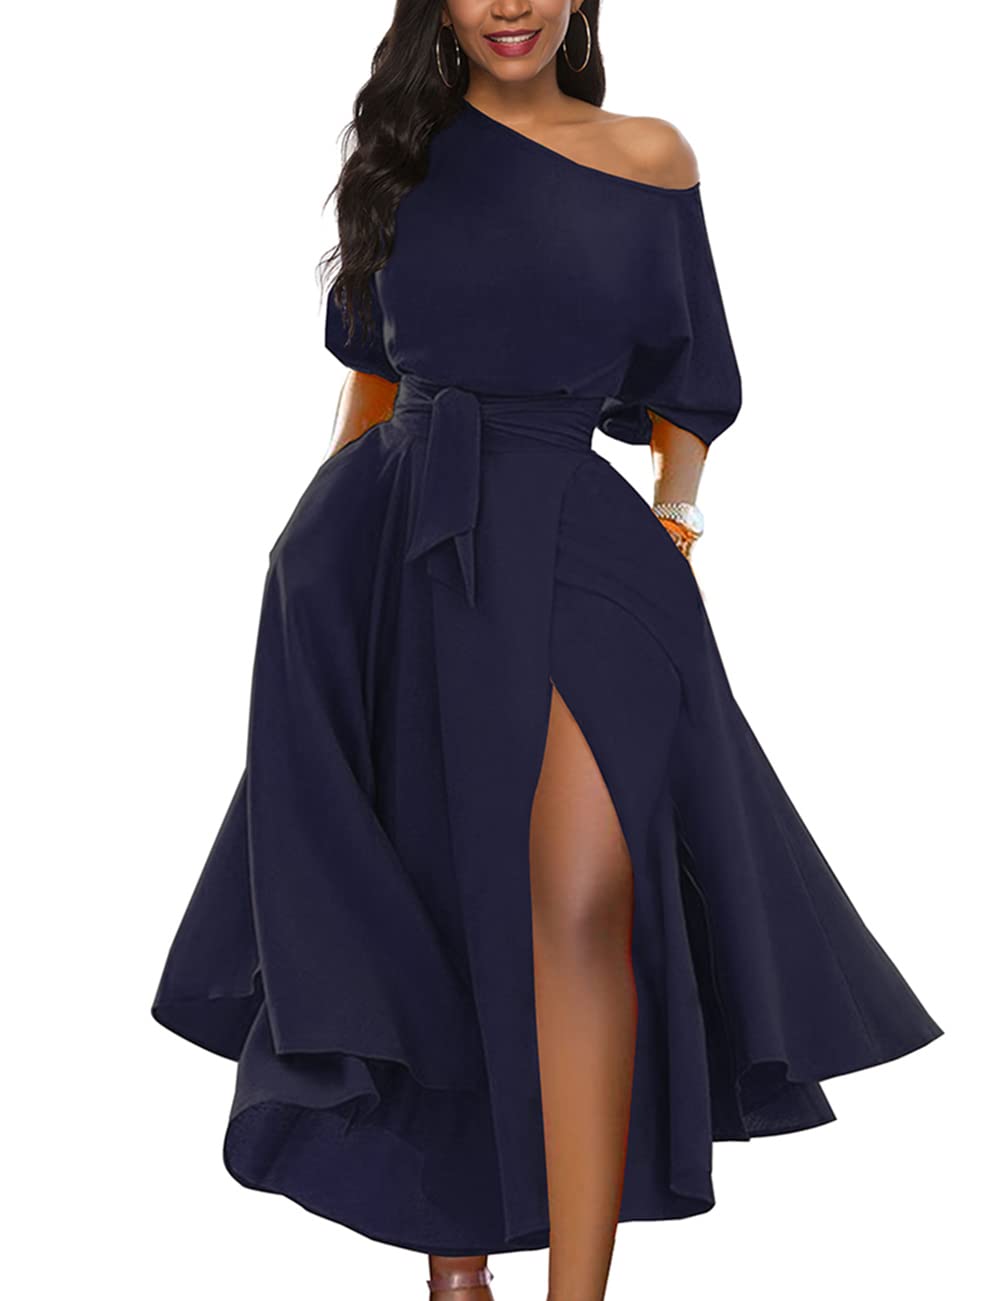 LILYIN Women’s Elegant Off Shoulder Short Sleeve Belted Side Slit Cocktail Party Swing Dress with Pockets